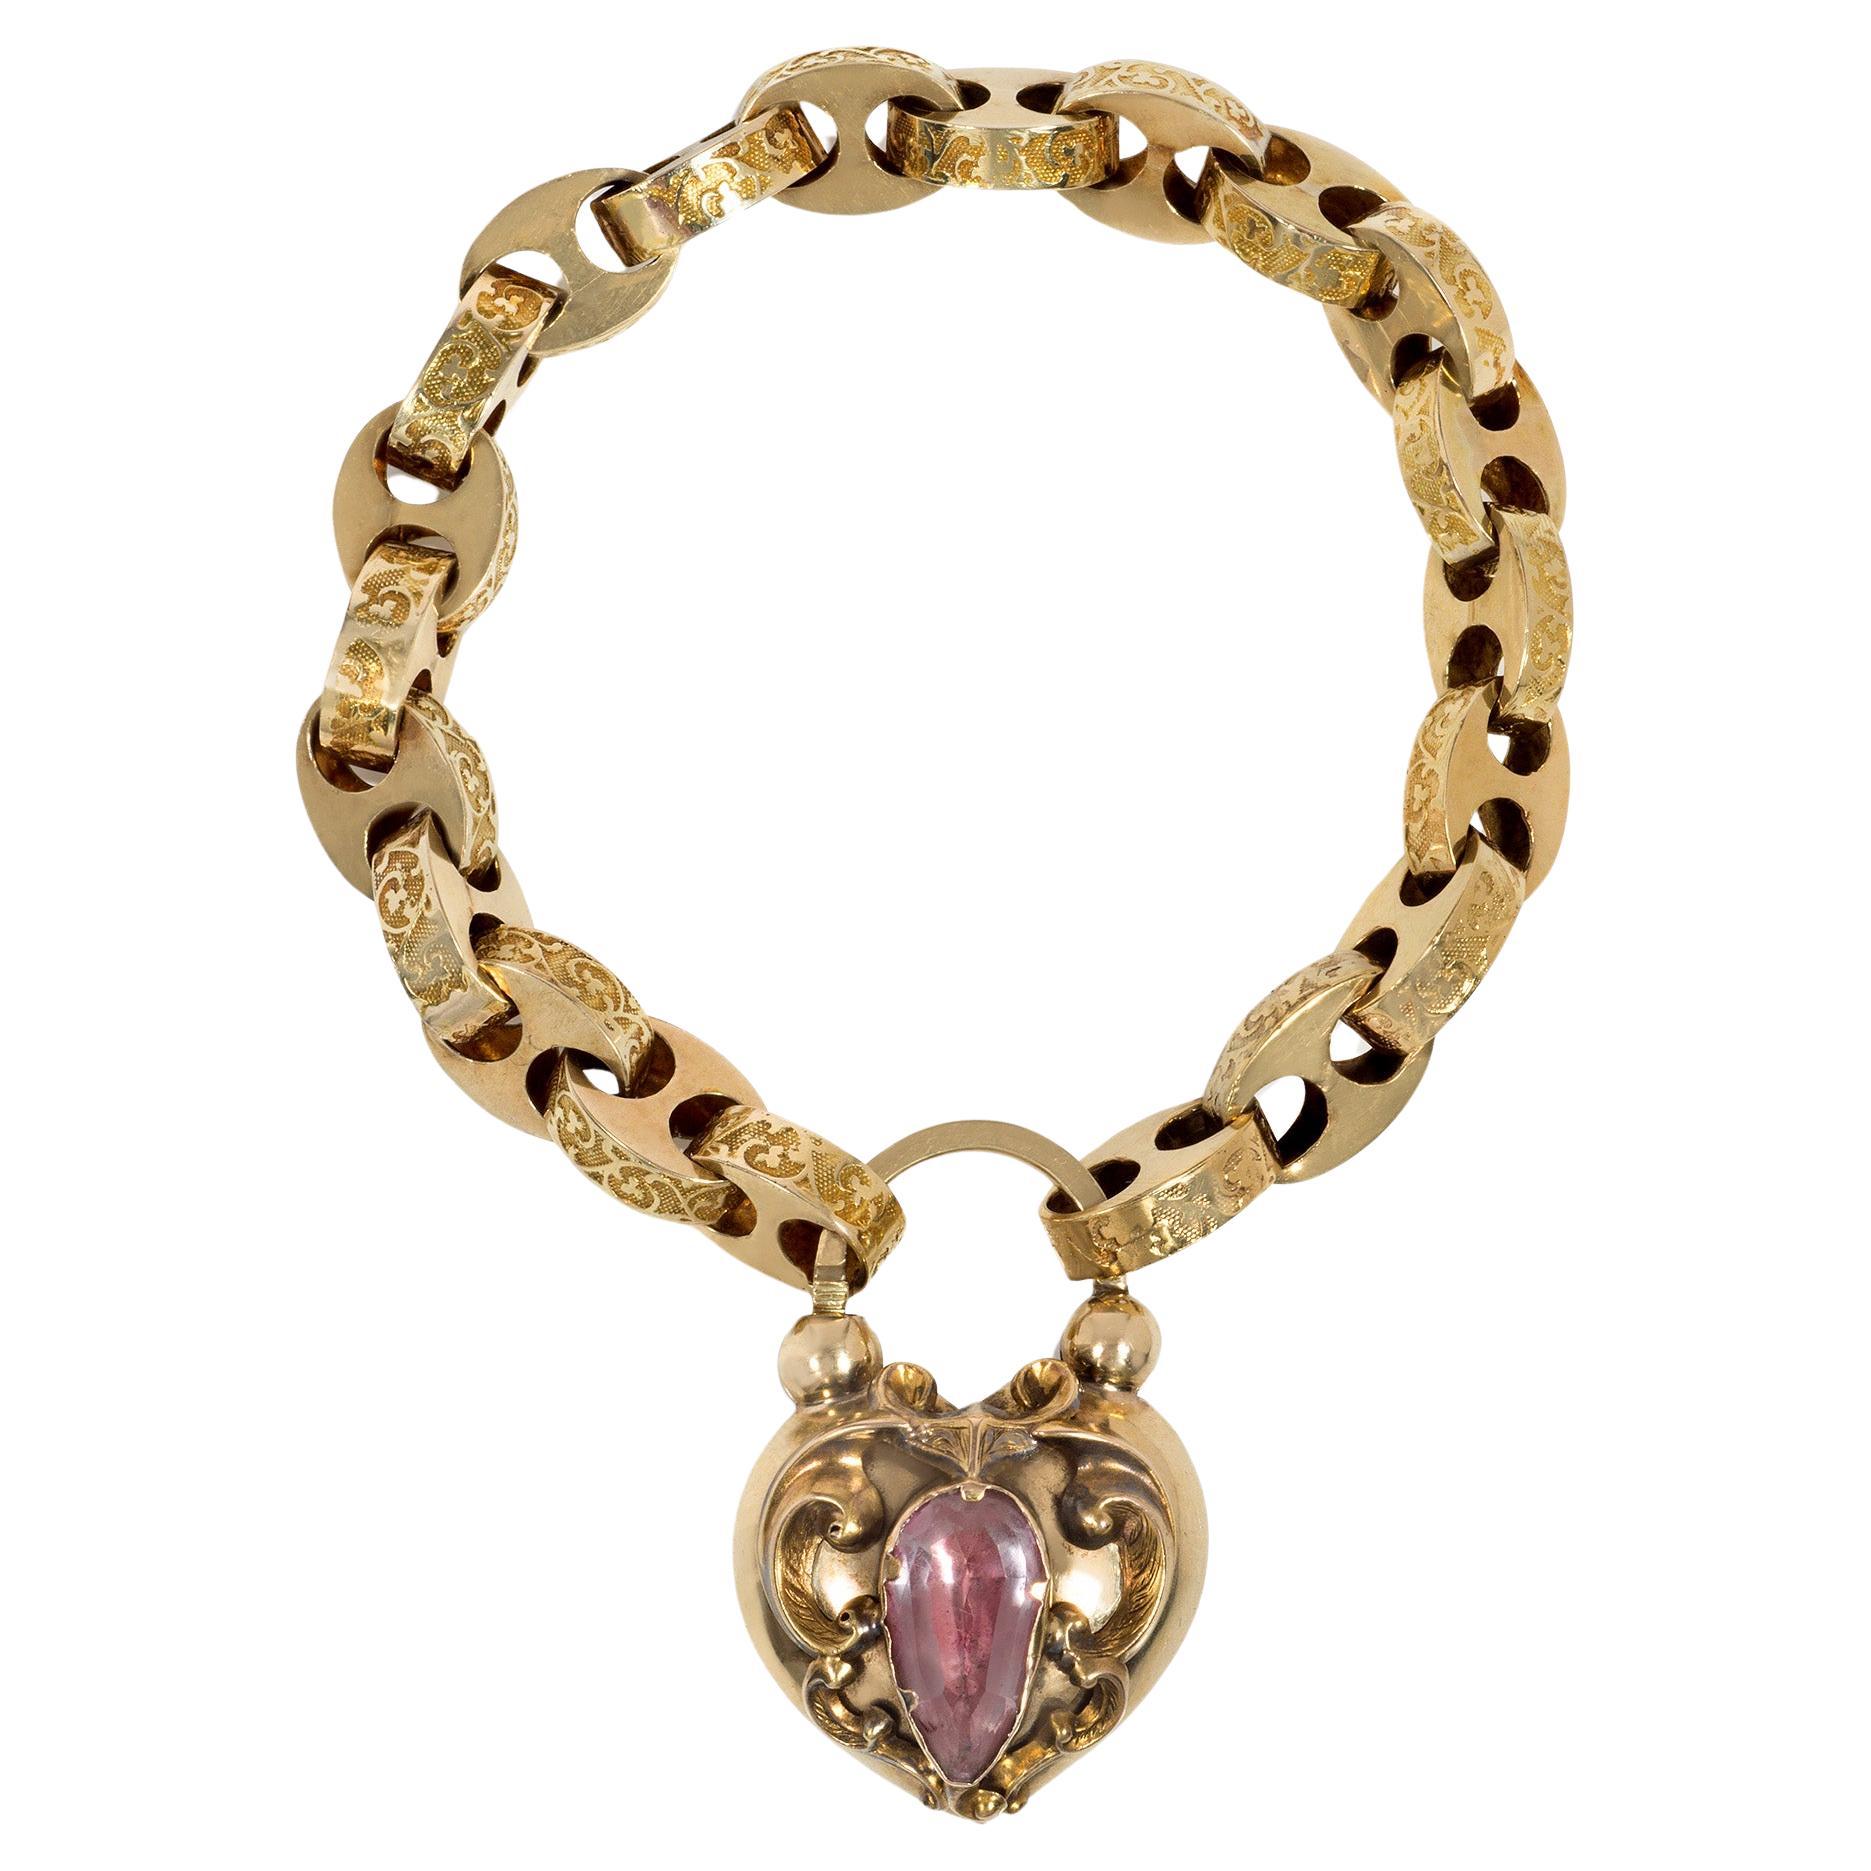 Antikes viktorianisches Armband aus Gold und rosa Topas im viktorianischen Stil mit herzförmigem Padlock-Verschluss